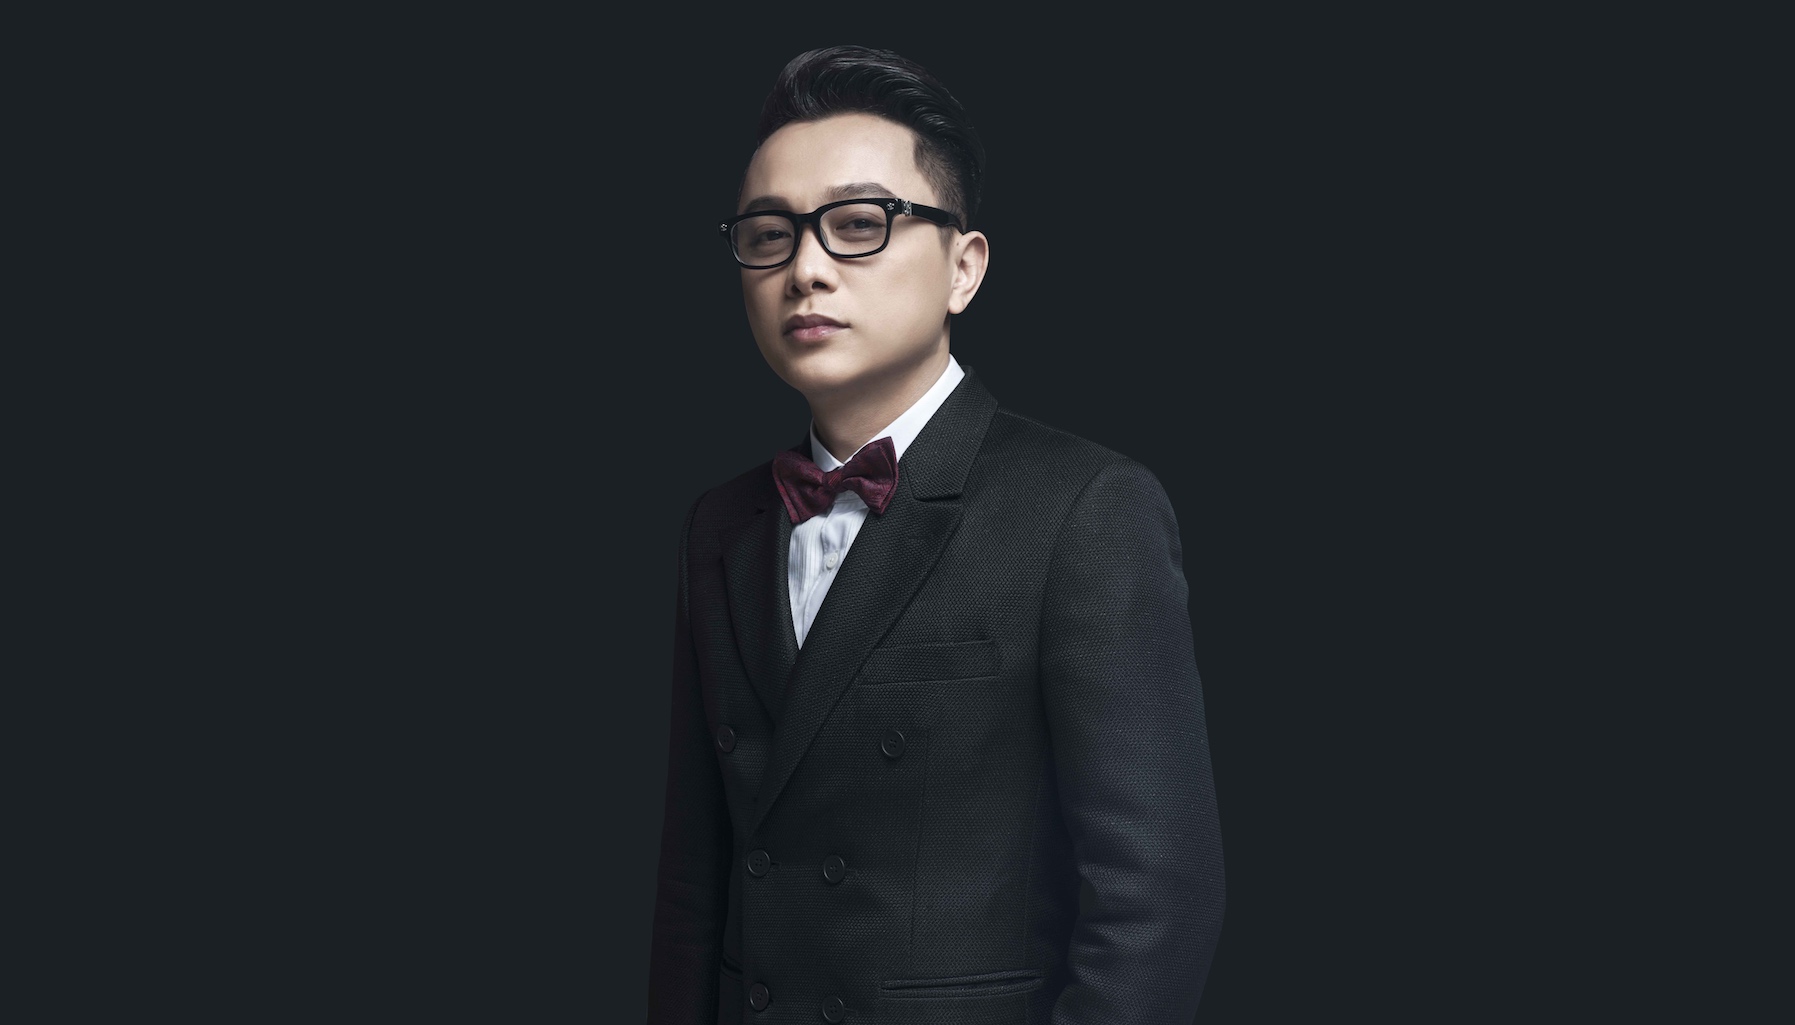 Anh là nhà thiết kế duy nhất ở Việt Nam trở thành uỷ viện chính thức của Hiệp hội thời trang châu Á.